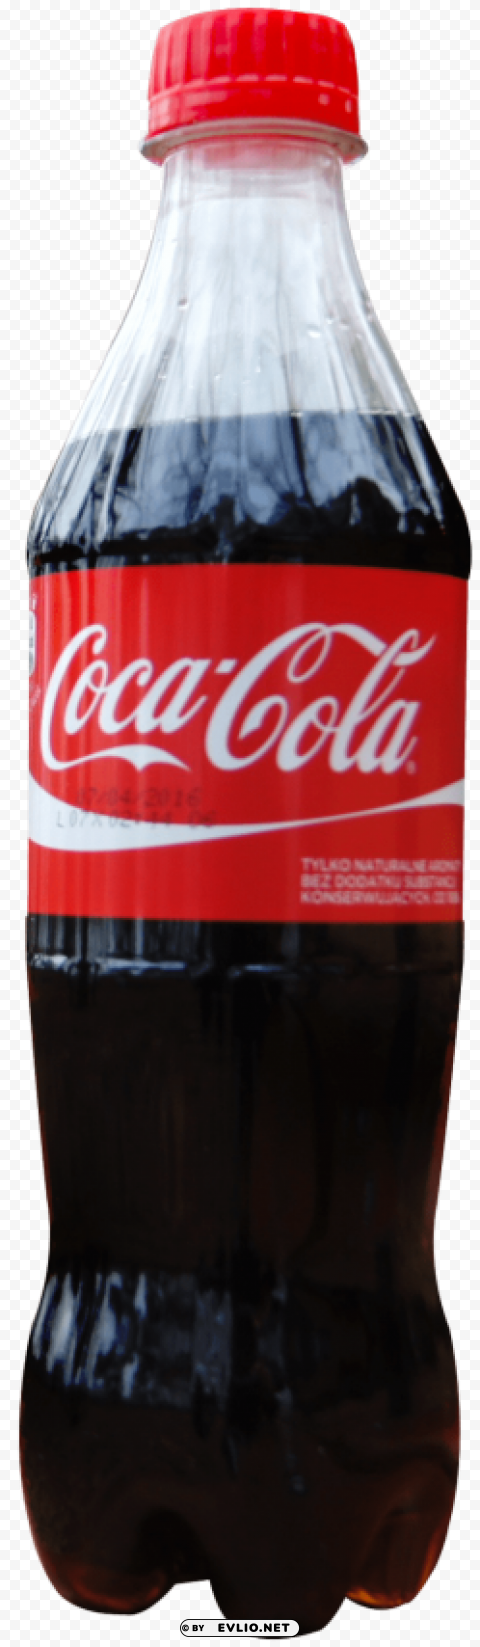 coke s PNG for digital design